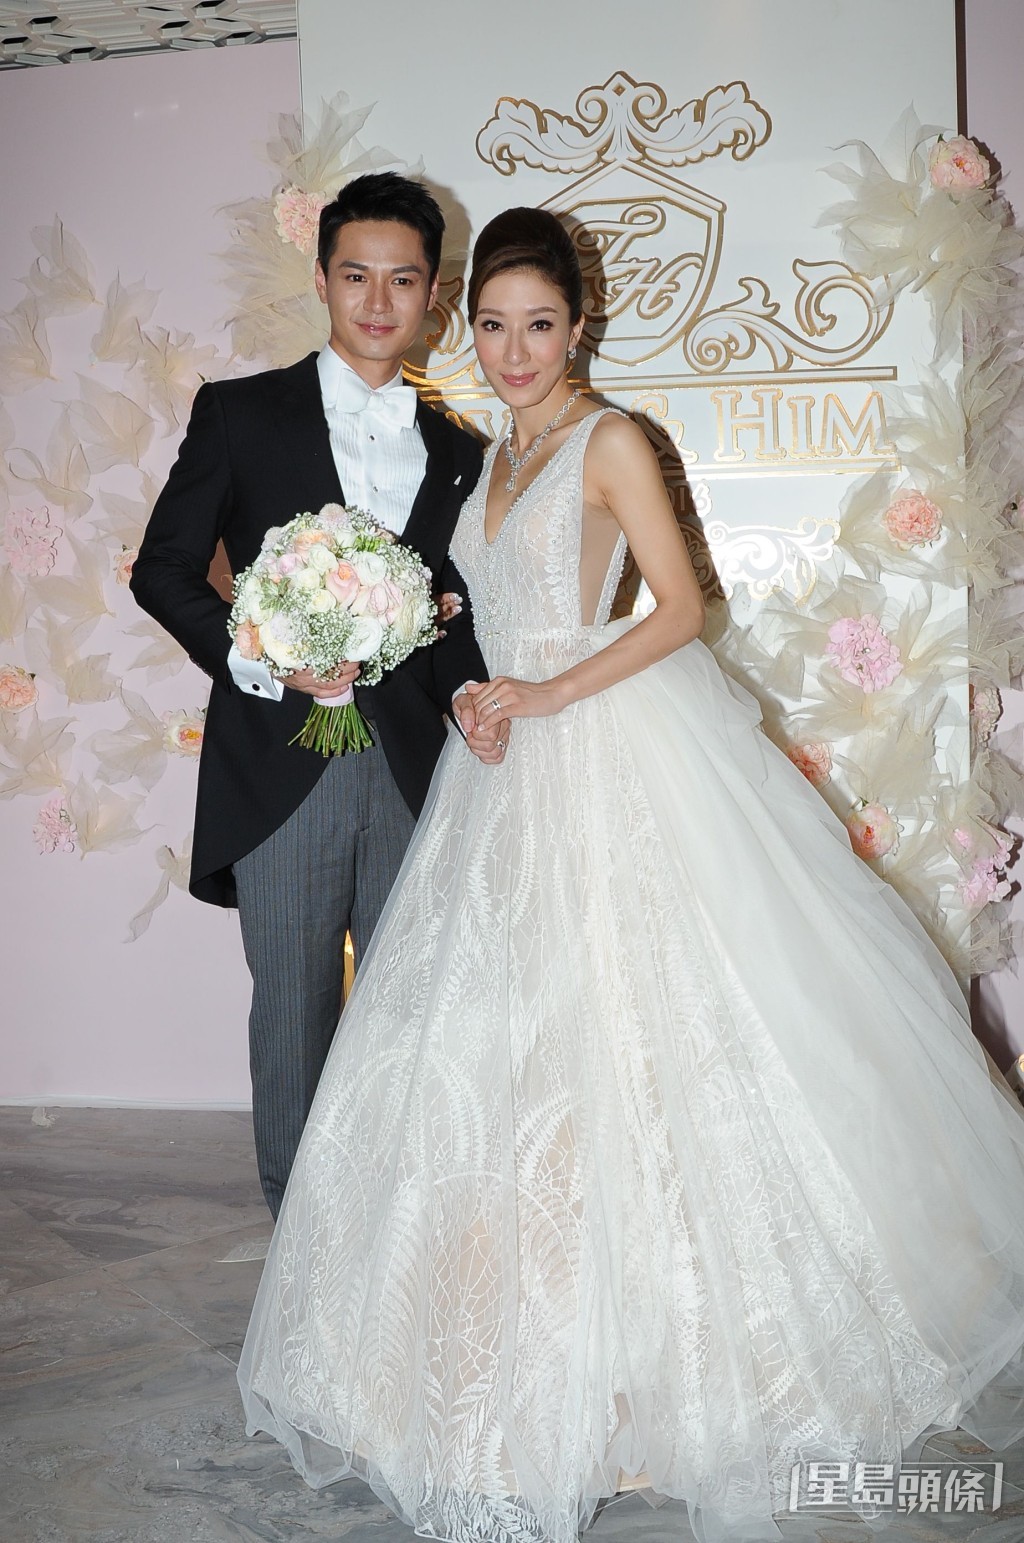 楊茜堯與羅子溢2016年10月在港舉行結婚儀式。